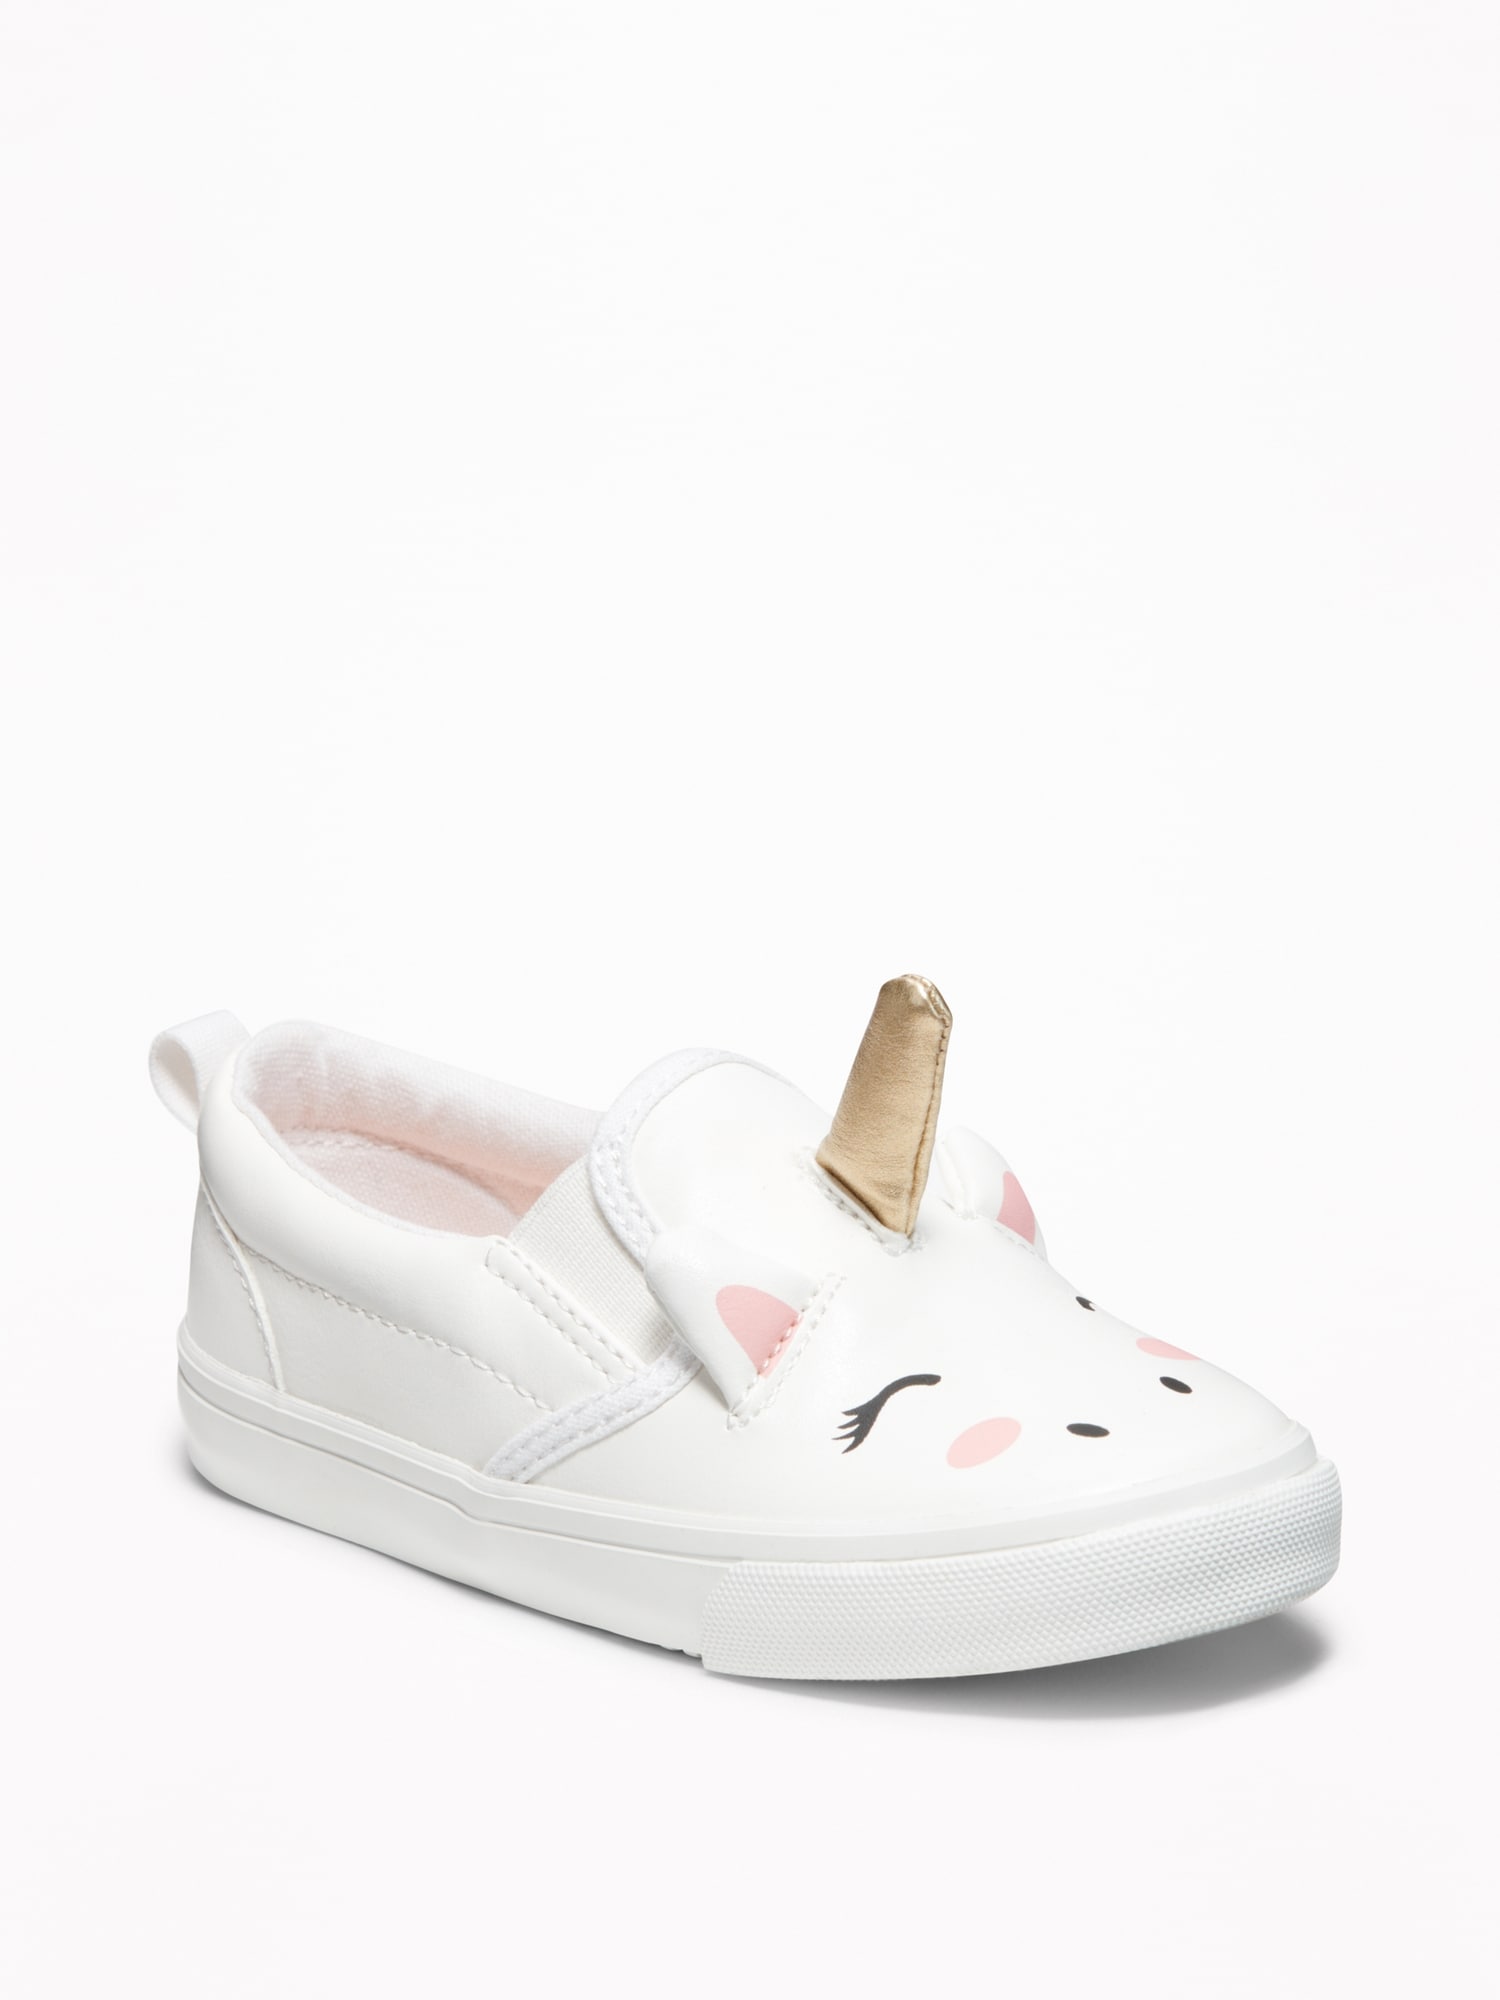 unicorn baby girl shoes